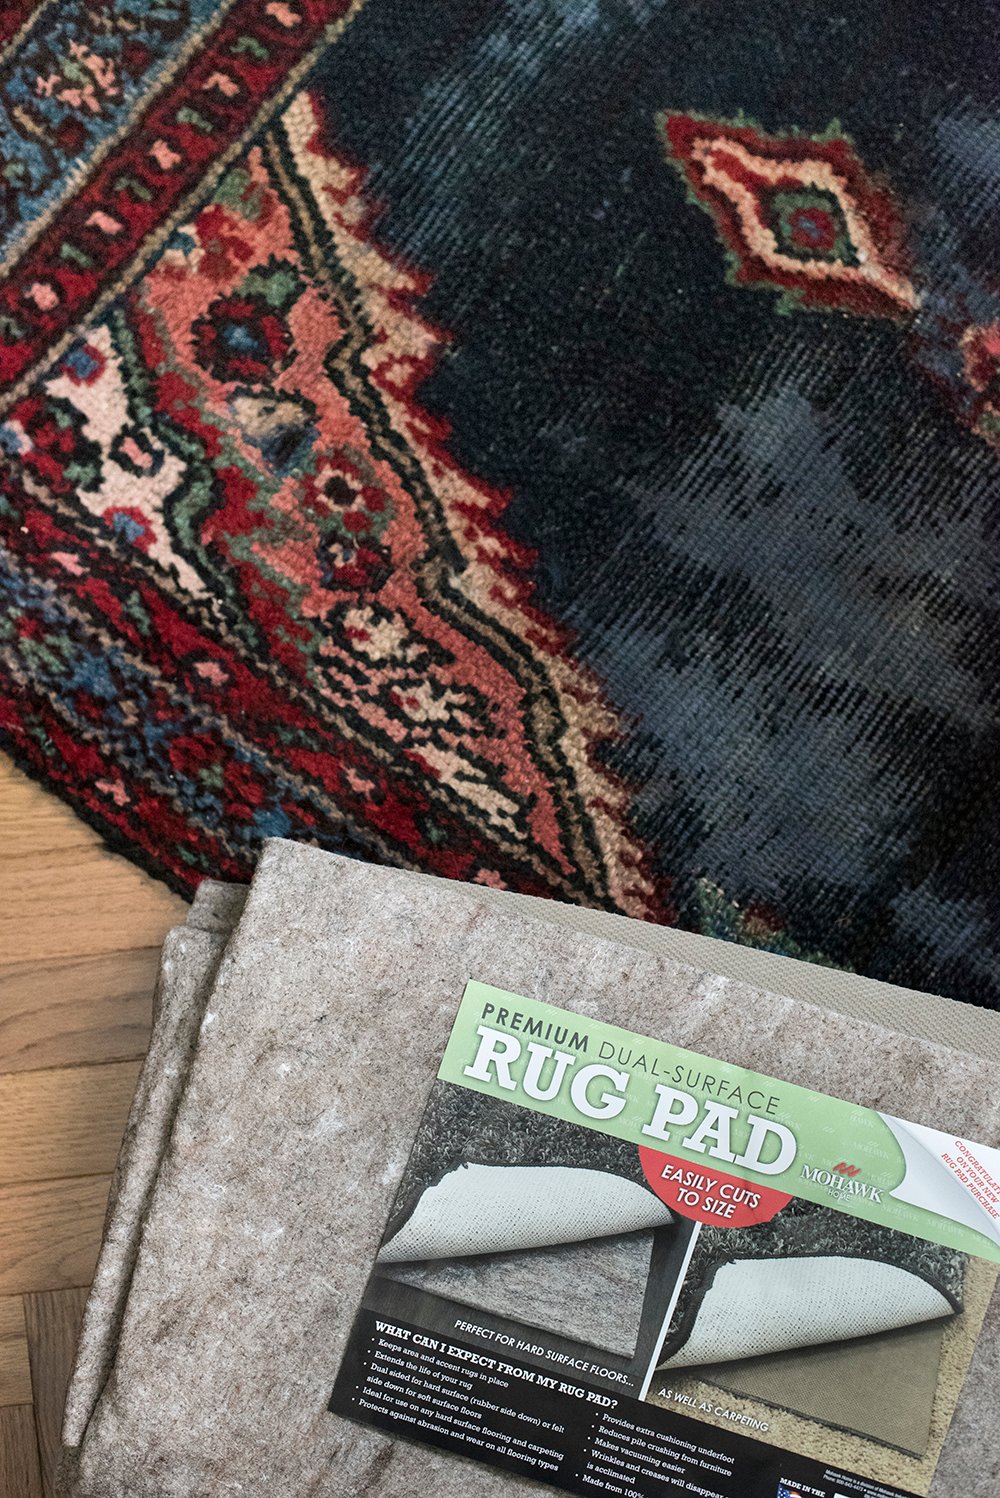 Do You Really Need a Rug Pad?